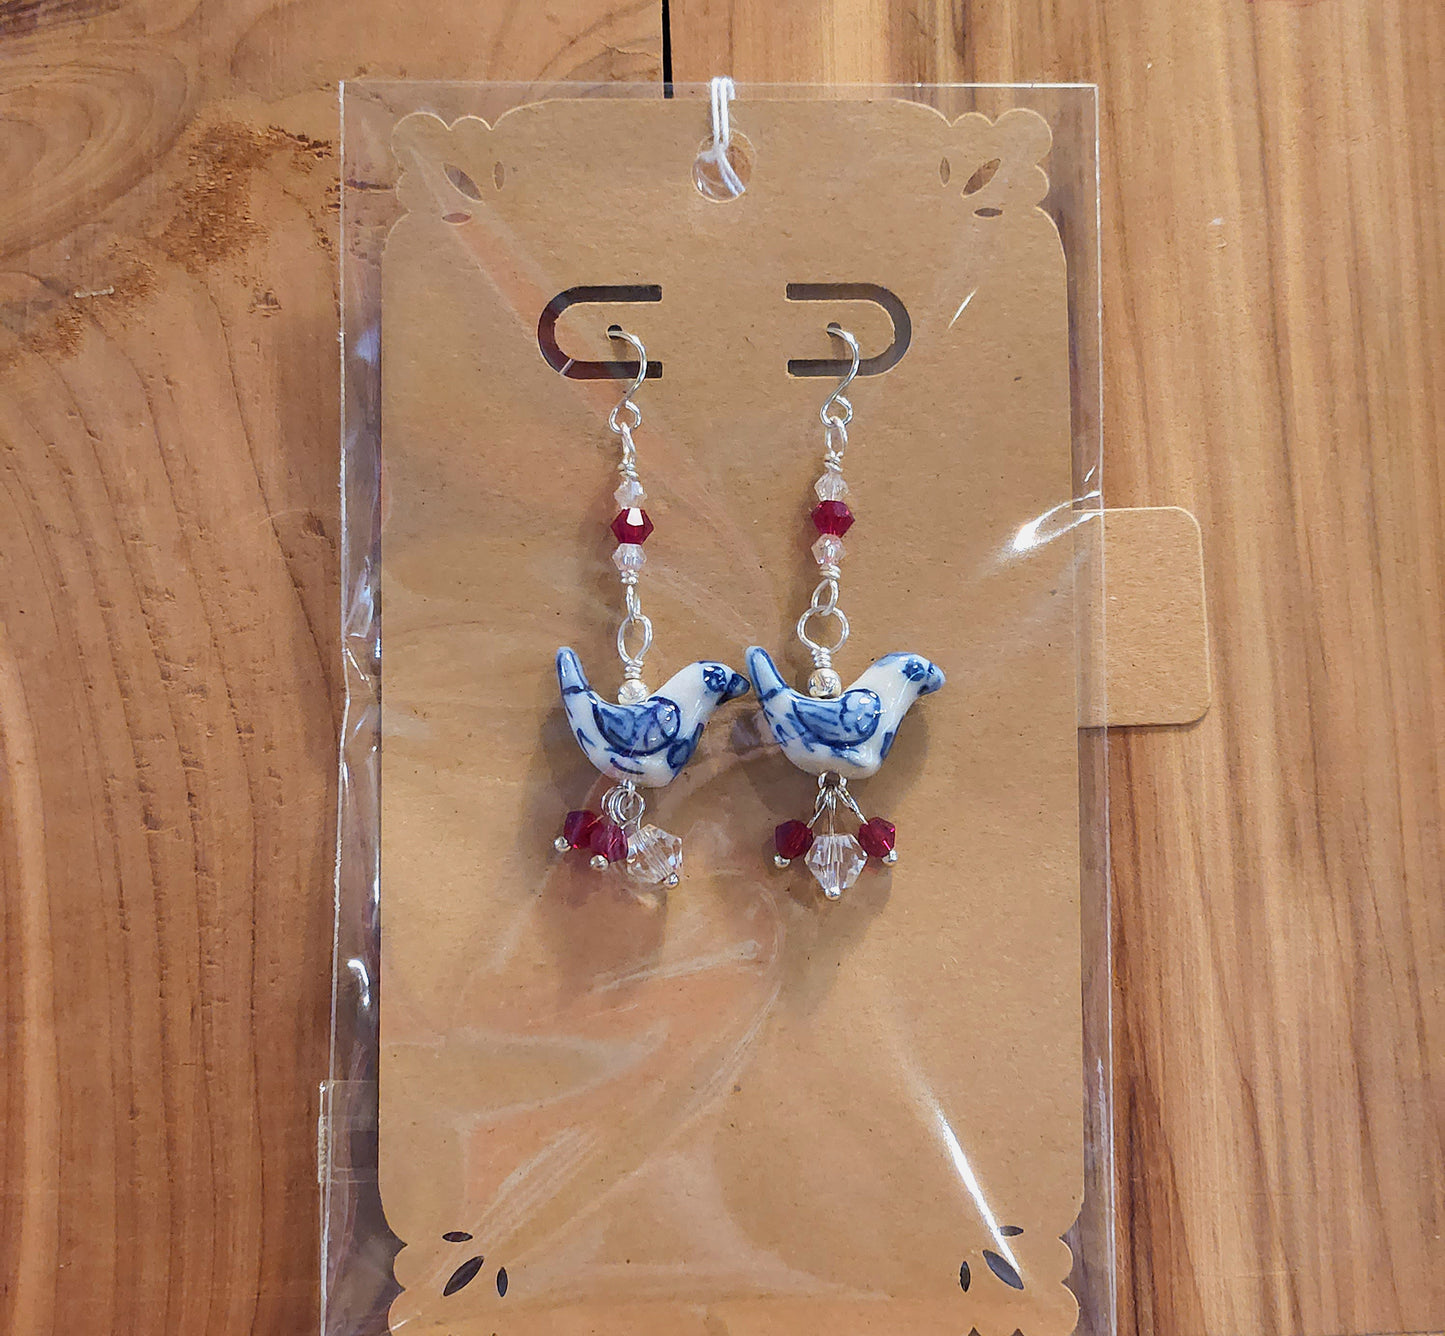 Cluster Jewel Chicken Earrings